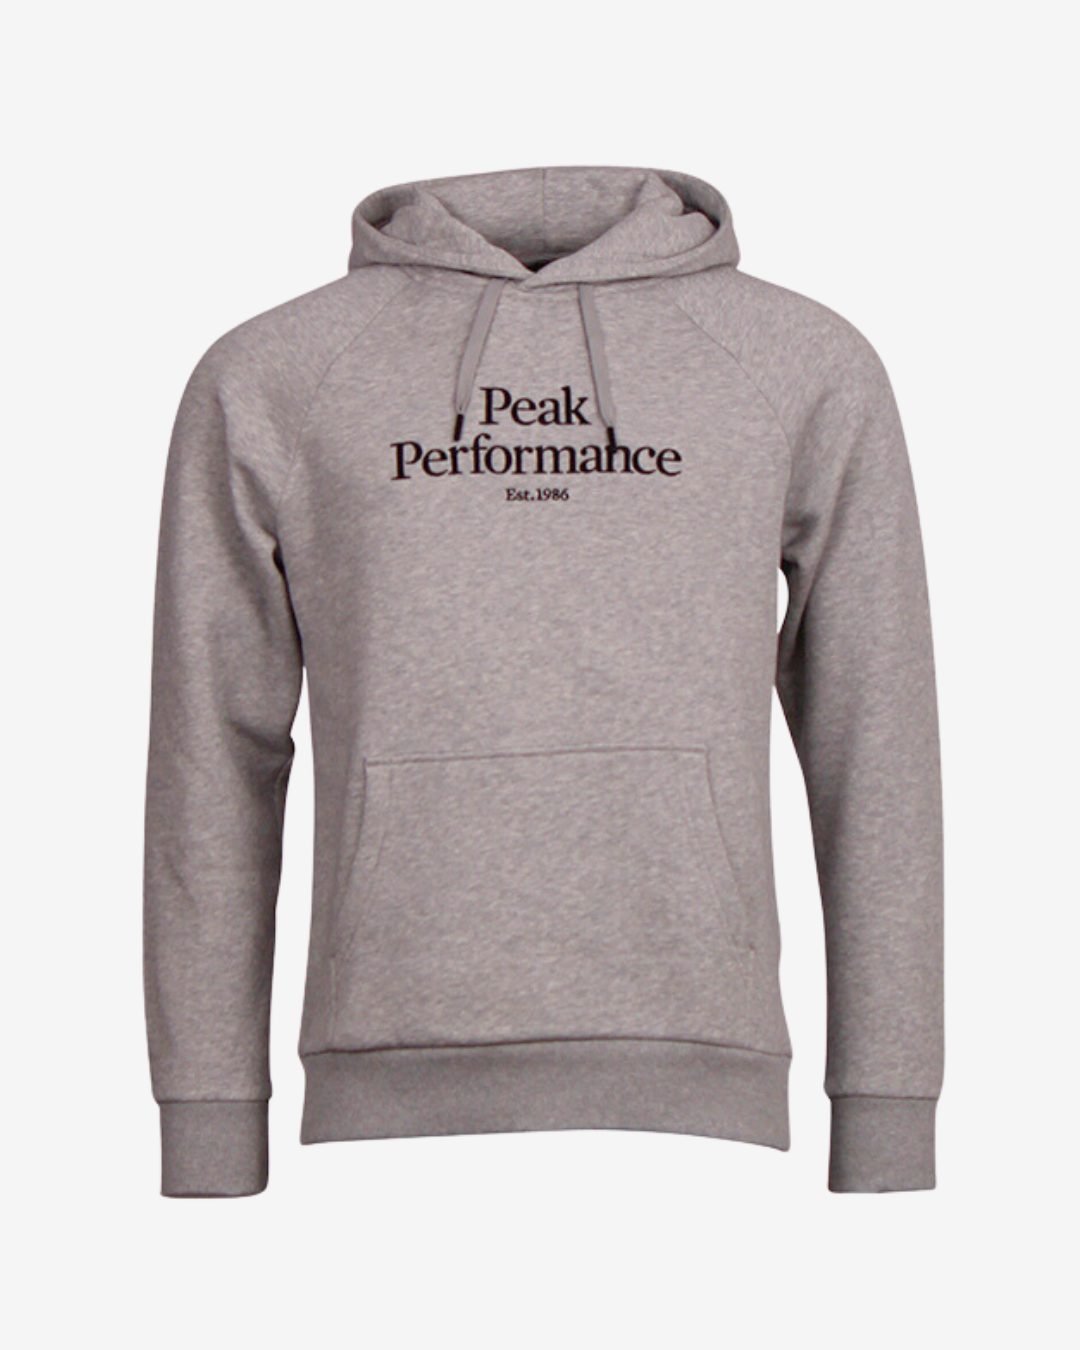 Billede af Peak Performance Original logo hættetrøje - Grå - Str. S - Modish.dk